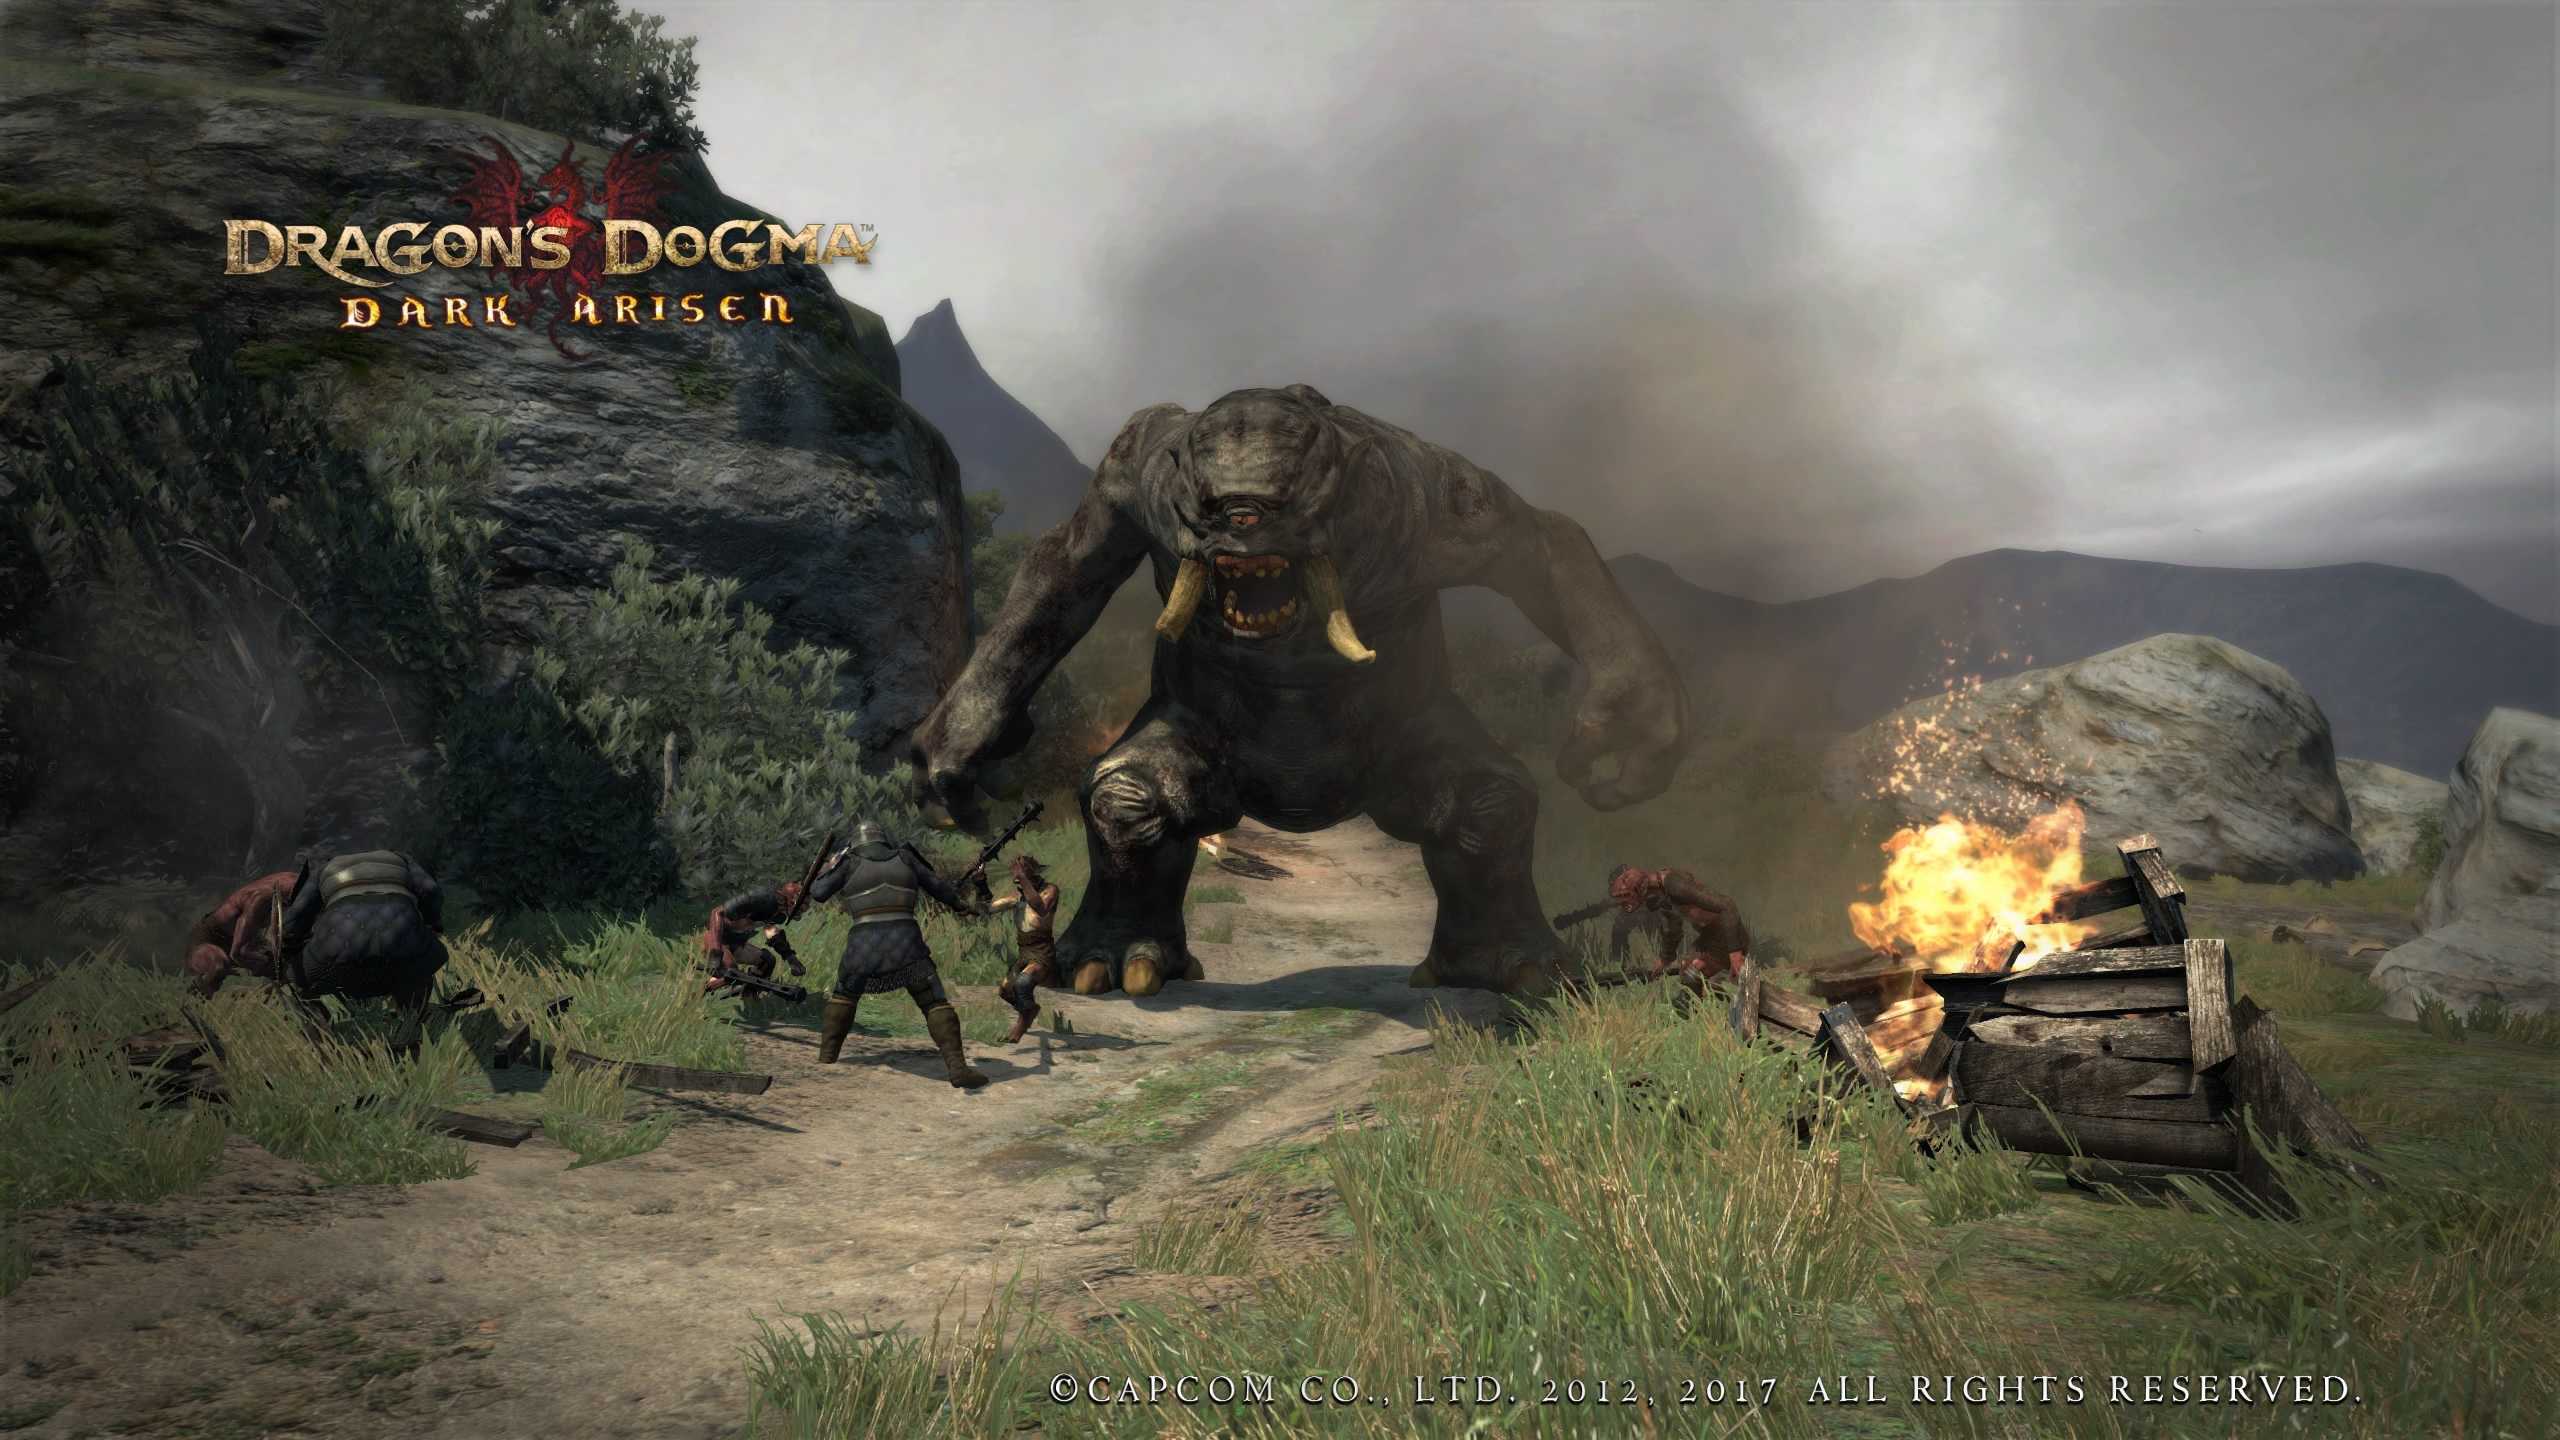 Dragons dogma dark arisen: история создания и сюжет, геймплей и многопользовательский режим